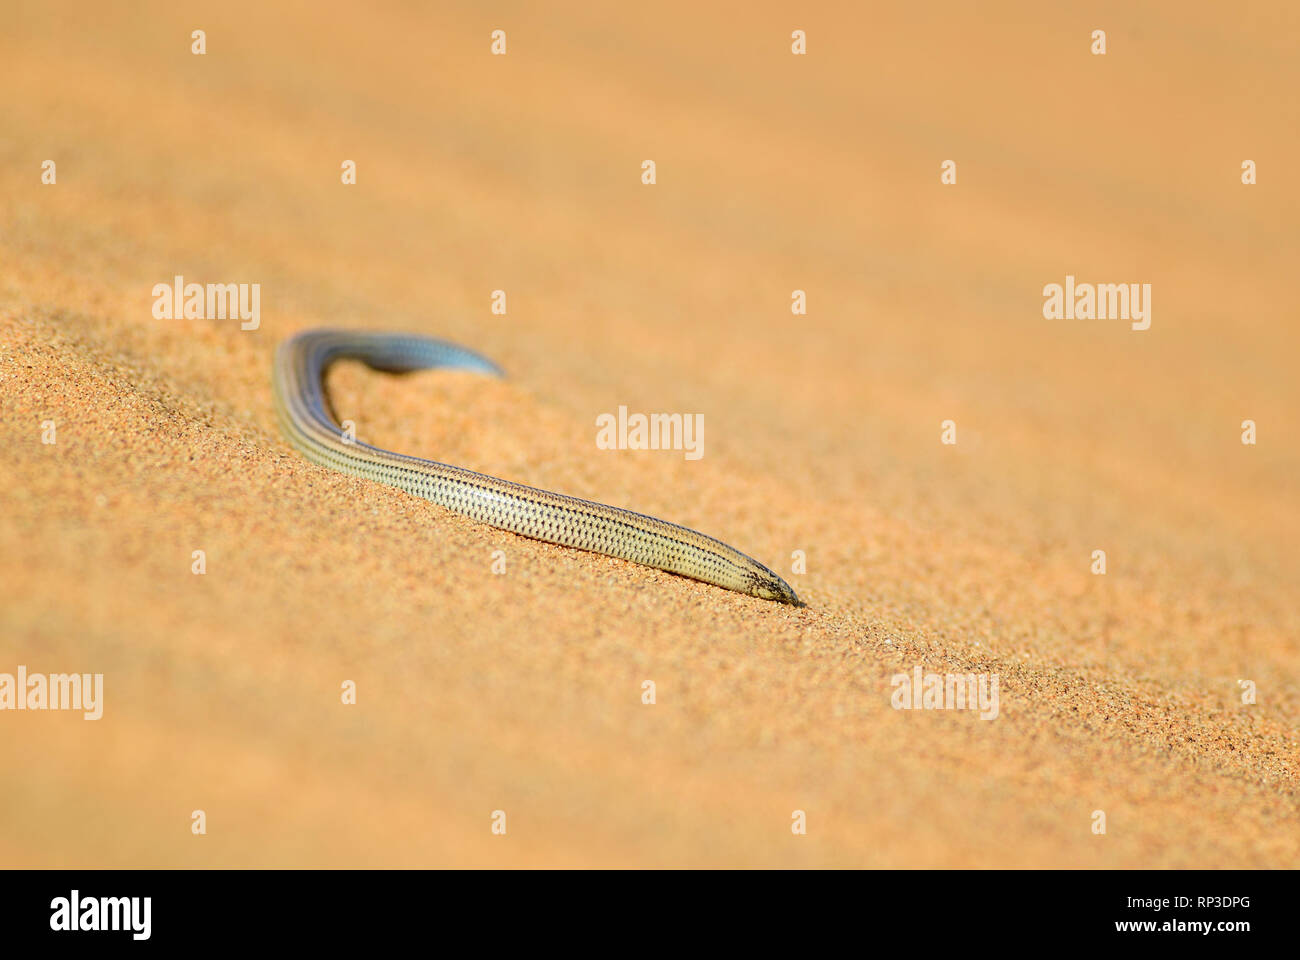 FitzSimons' Burrowing Skink - Typhlacontias brevipes, special legless lizard from Namib desert, Swakopmund, Namibia. Stock Photo